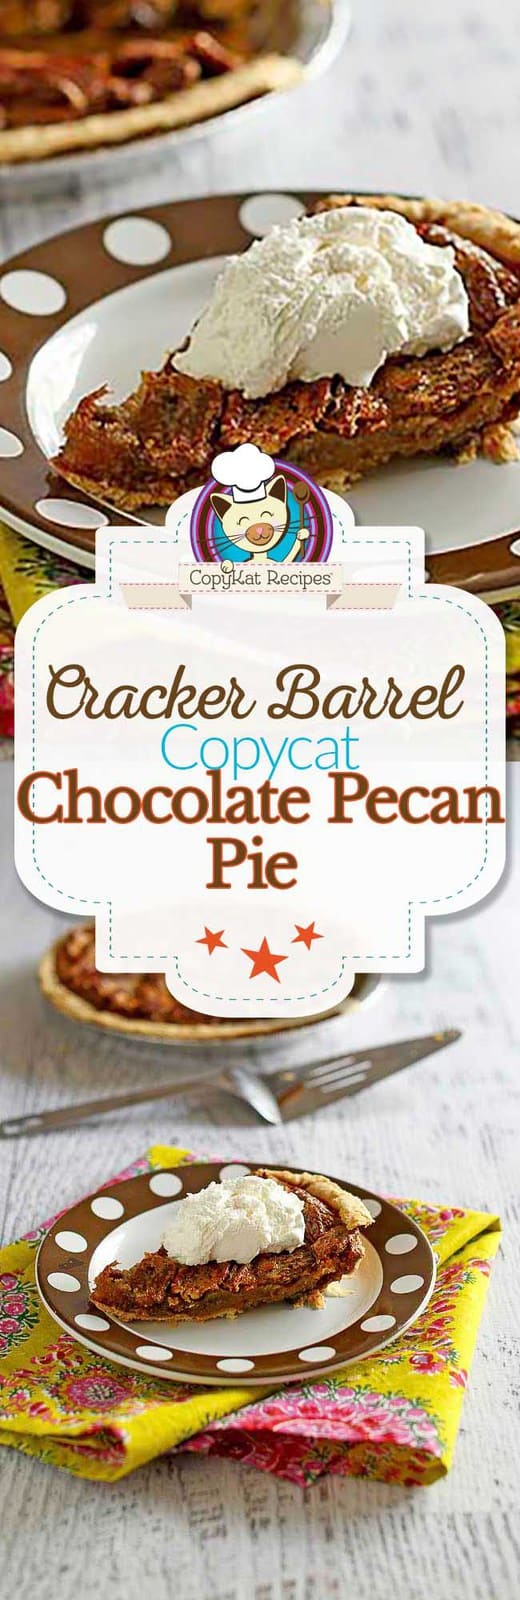 Cracker Barrel Chocolate Pecan Pie